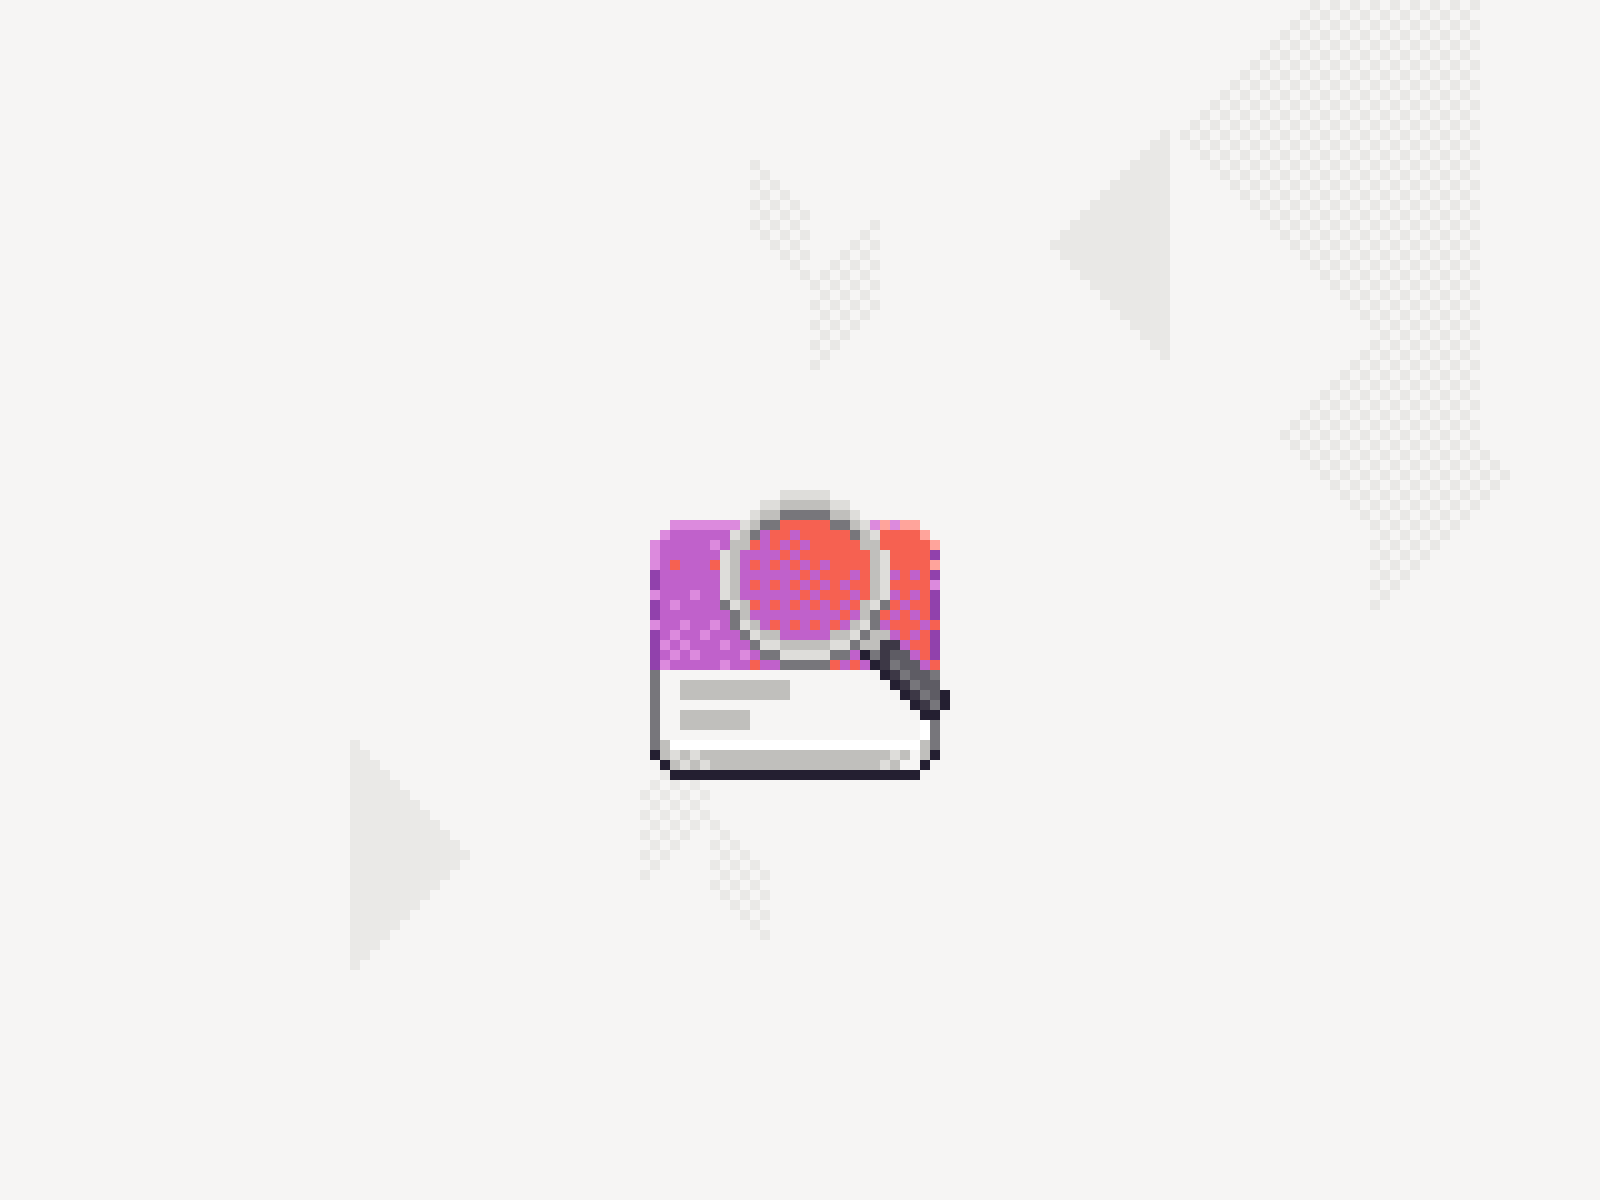 Share Preview animation design icon pixaki pixelart